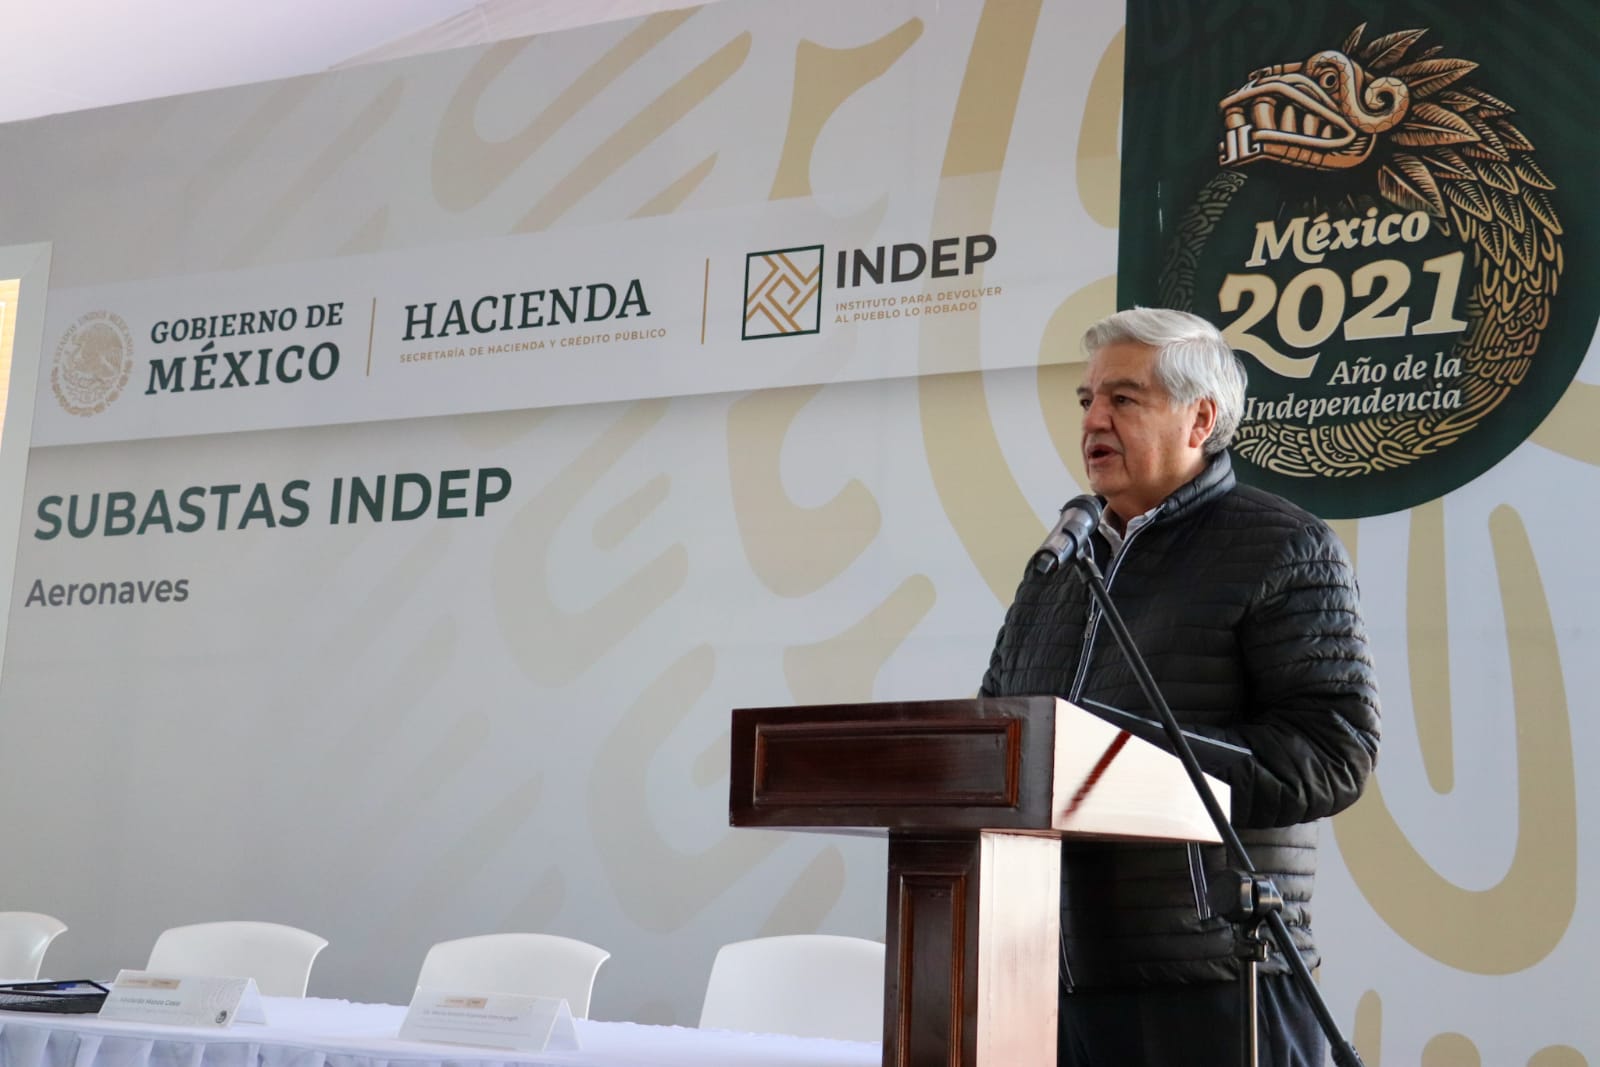 Estamos haciendo cosas diferentes en el Indep para beneficiar a los que menos tienen: Ernesto Prieto